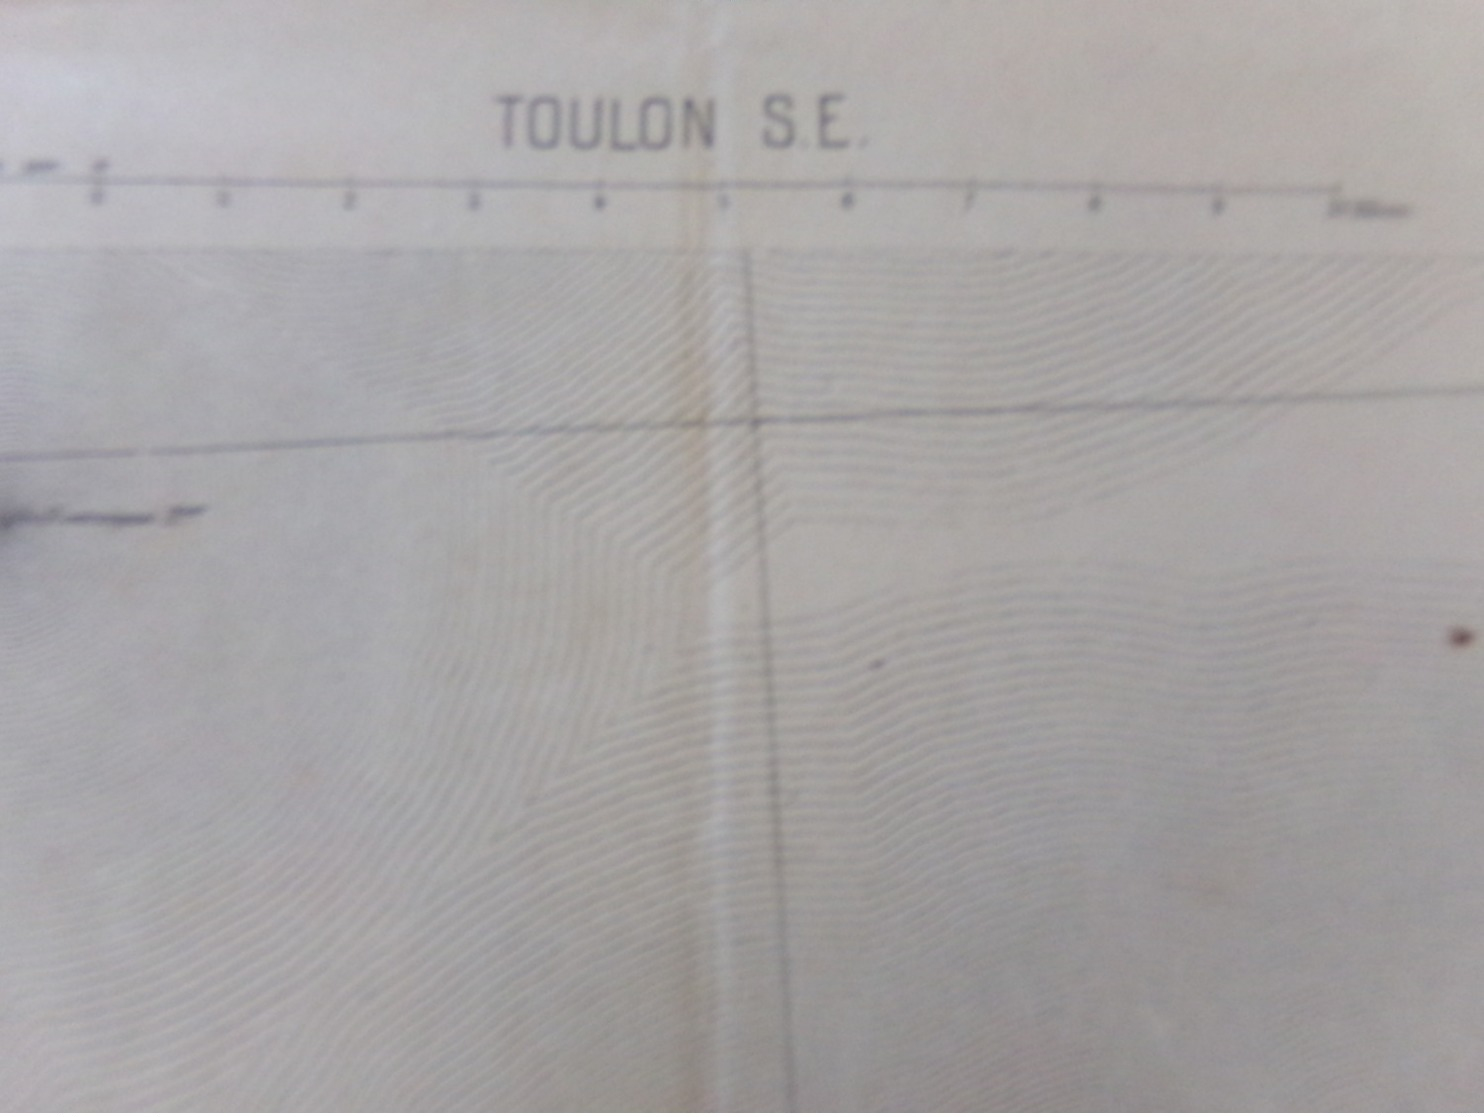 Carte Toulon  Port Gros Levant 1889 - Cartes Marines